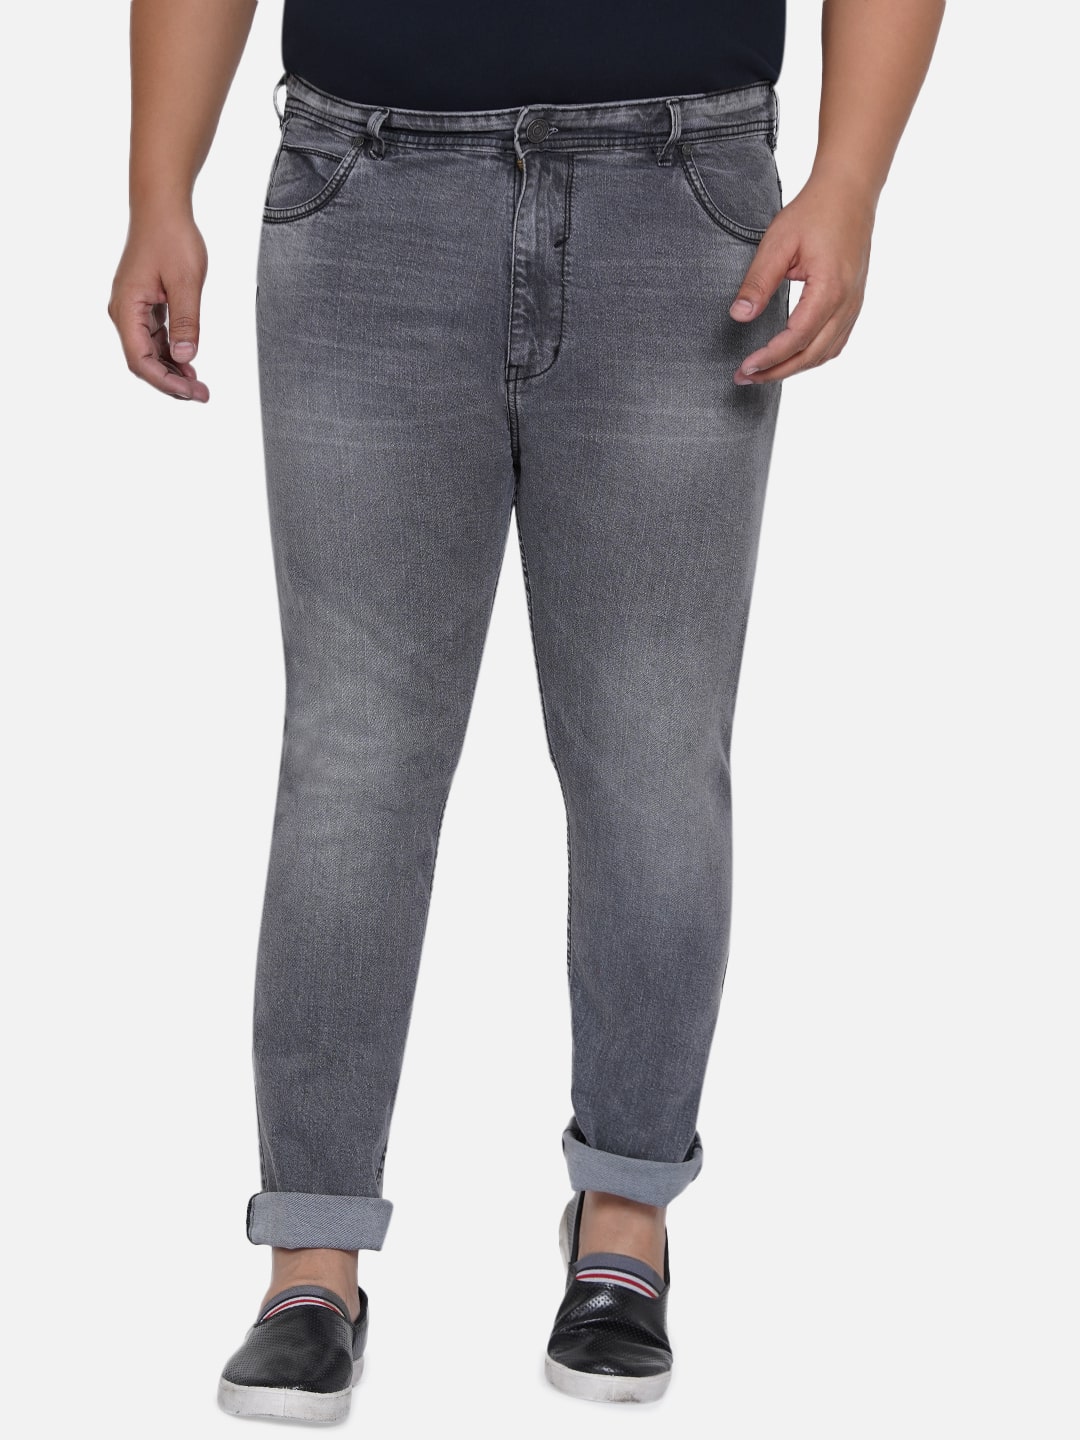 bottomwear/jeans/EJPJ25011/ejpj25011-2.jpg